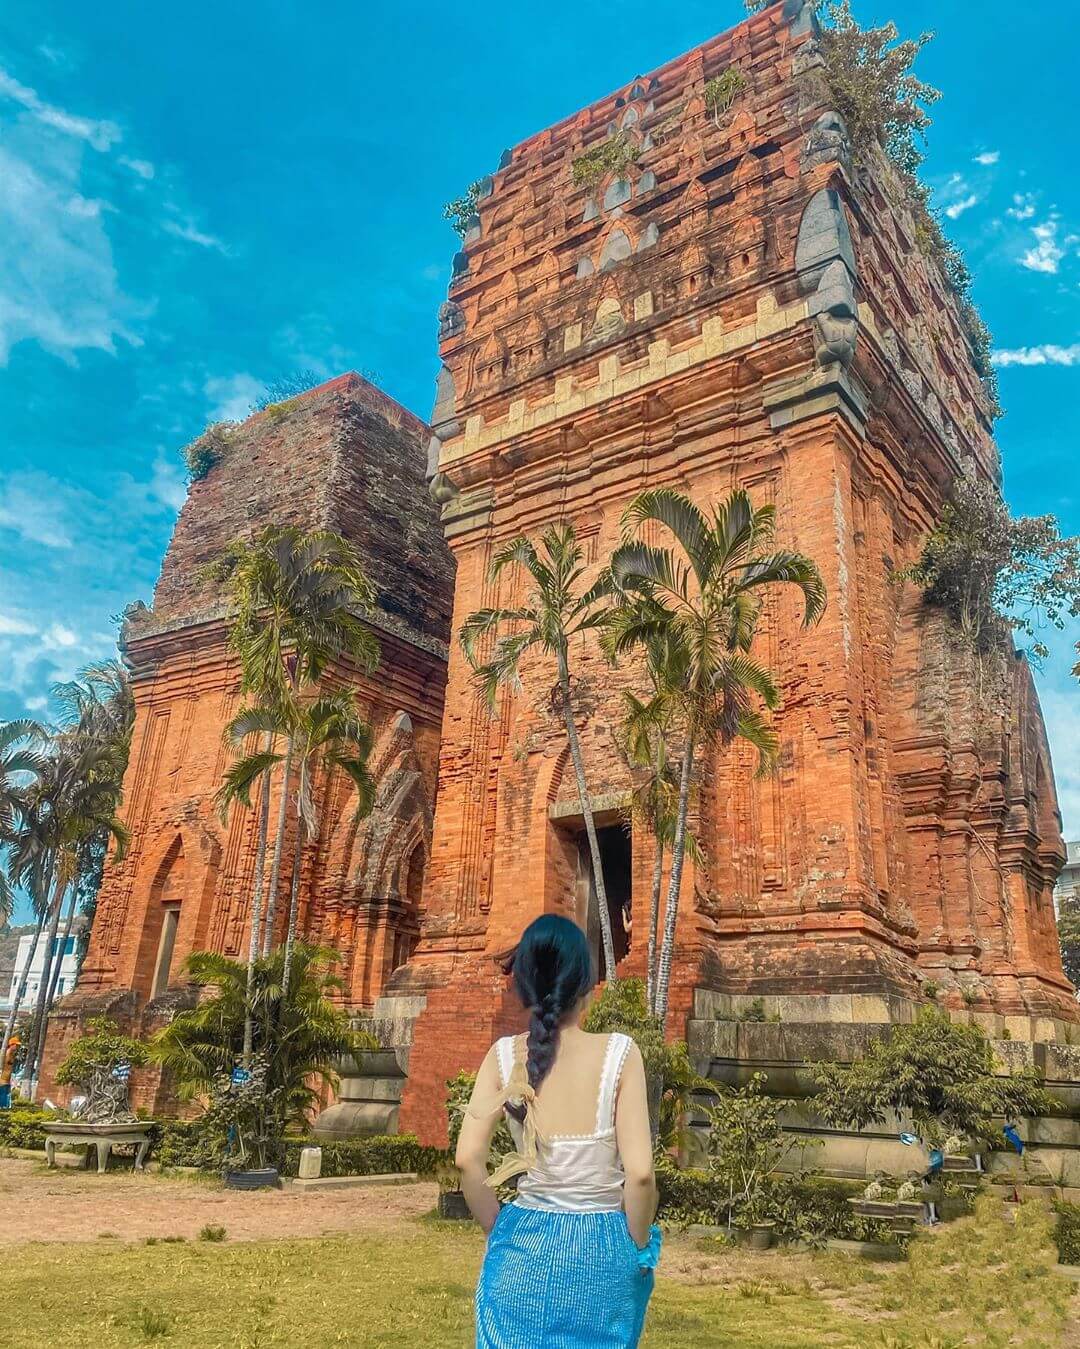 Chụp ảnh tại tháp Chăm Bình Định